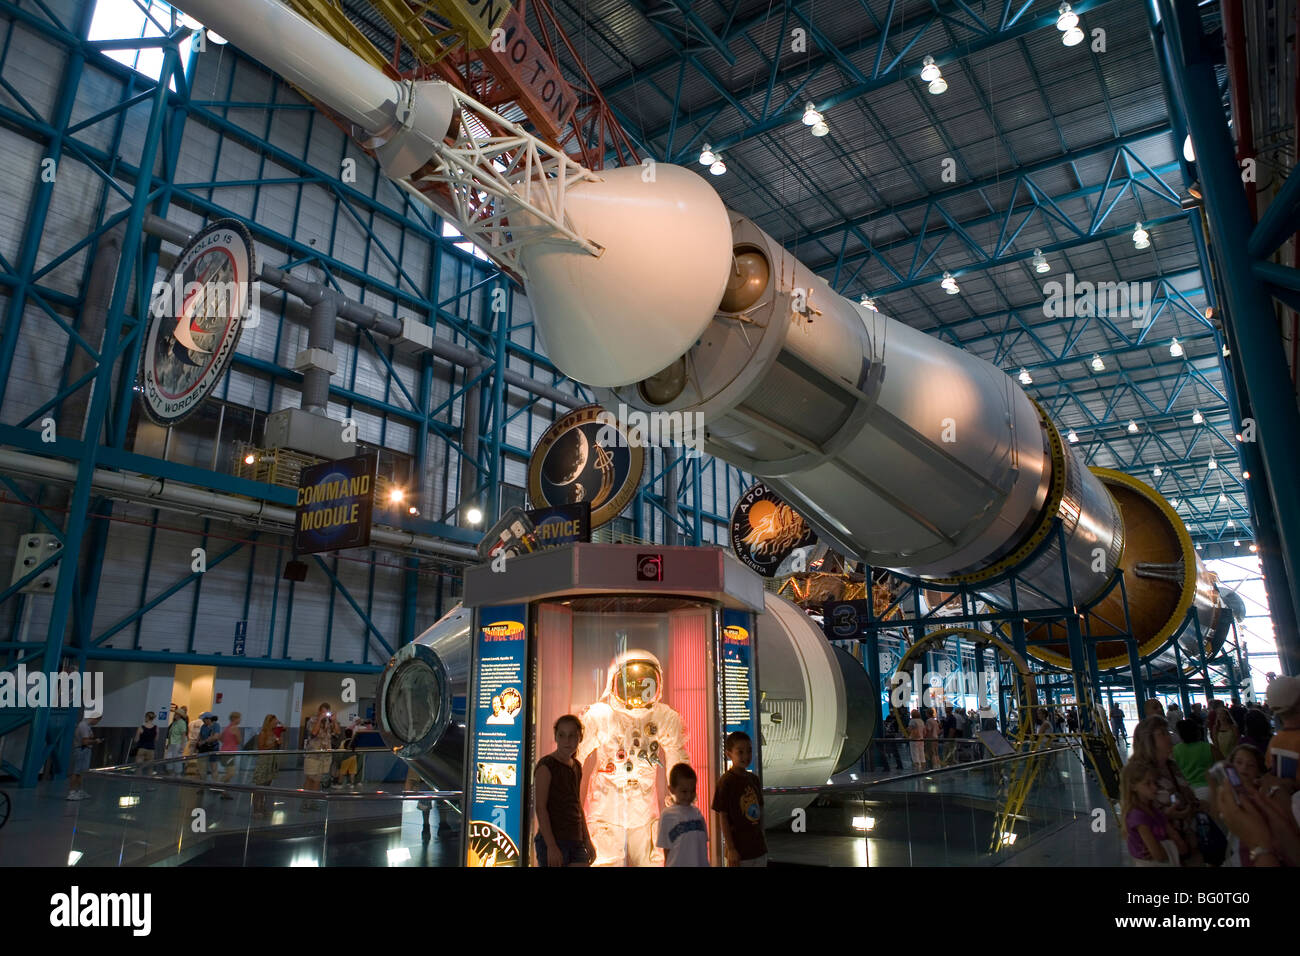 Fusée Saturn V, les modules de service et de commande, et de l'espace couleur de l'Apollo 13, Kennedy Space Center, Cap Canaveral, Floride, USA Banque D'Images